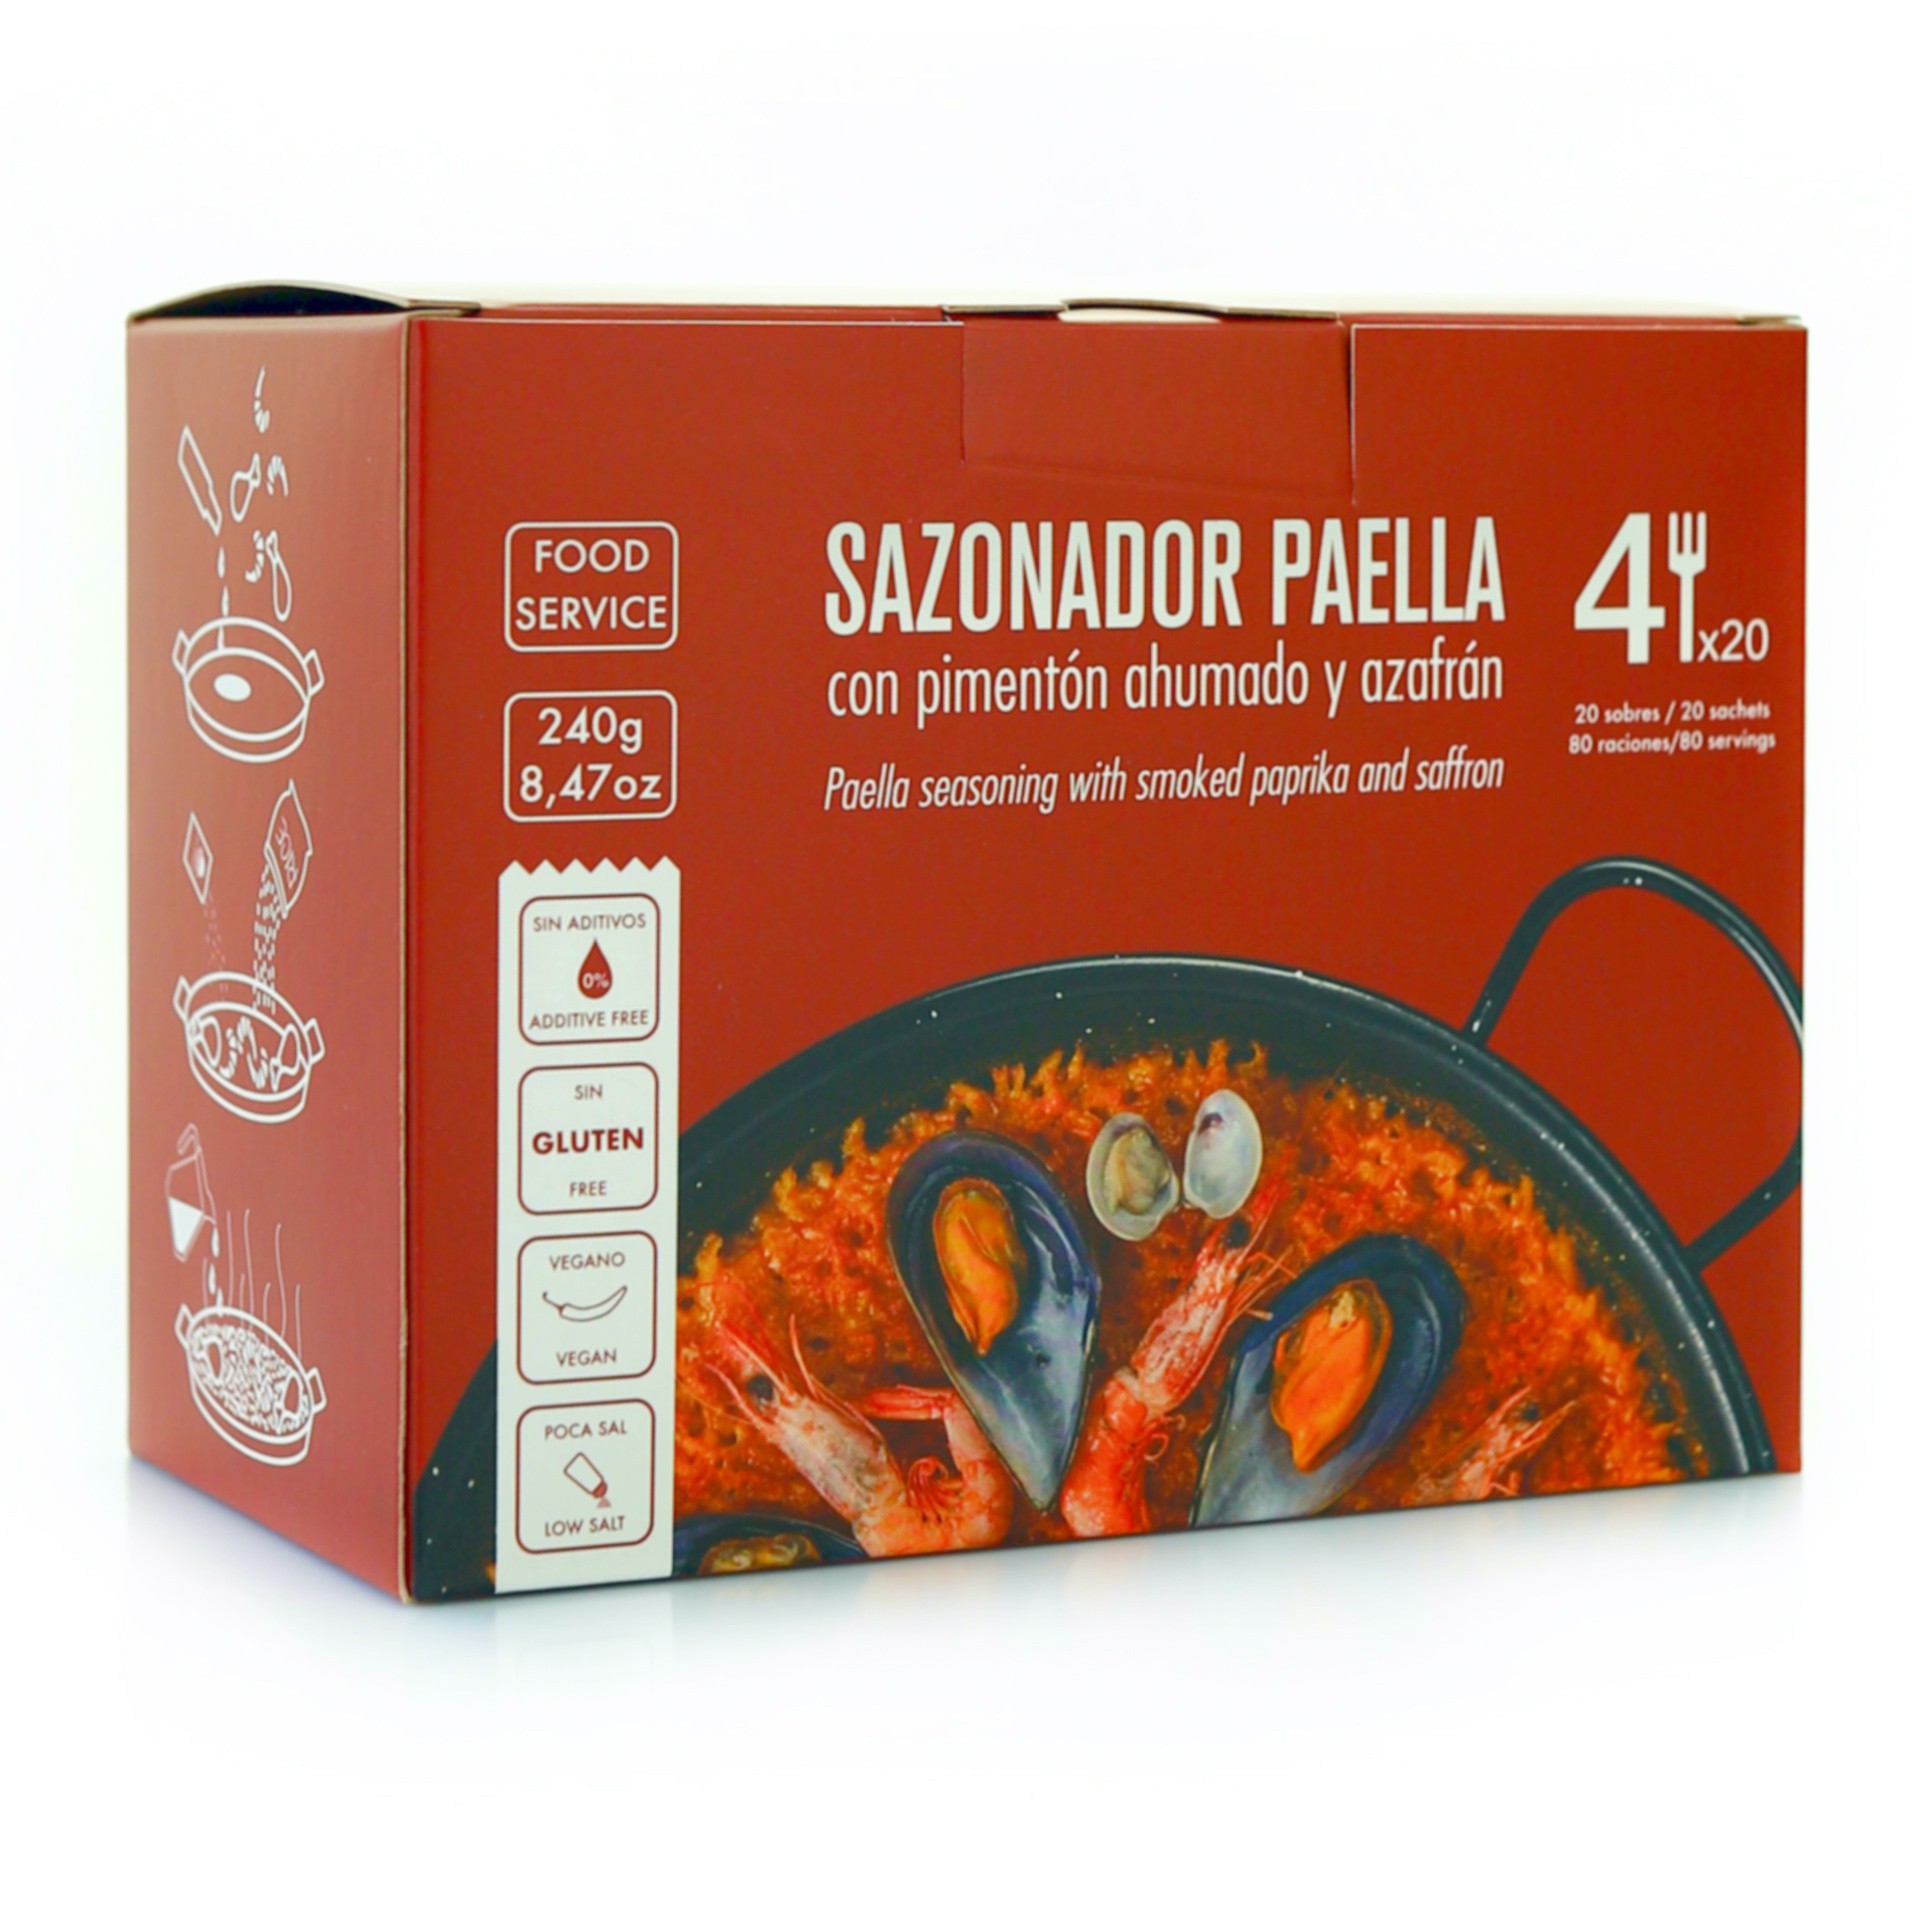 Paella Seasoning "La Chinata" 240g - Food Service Size